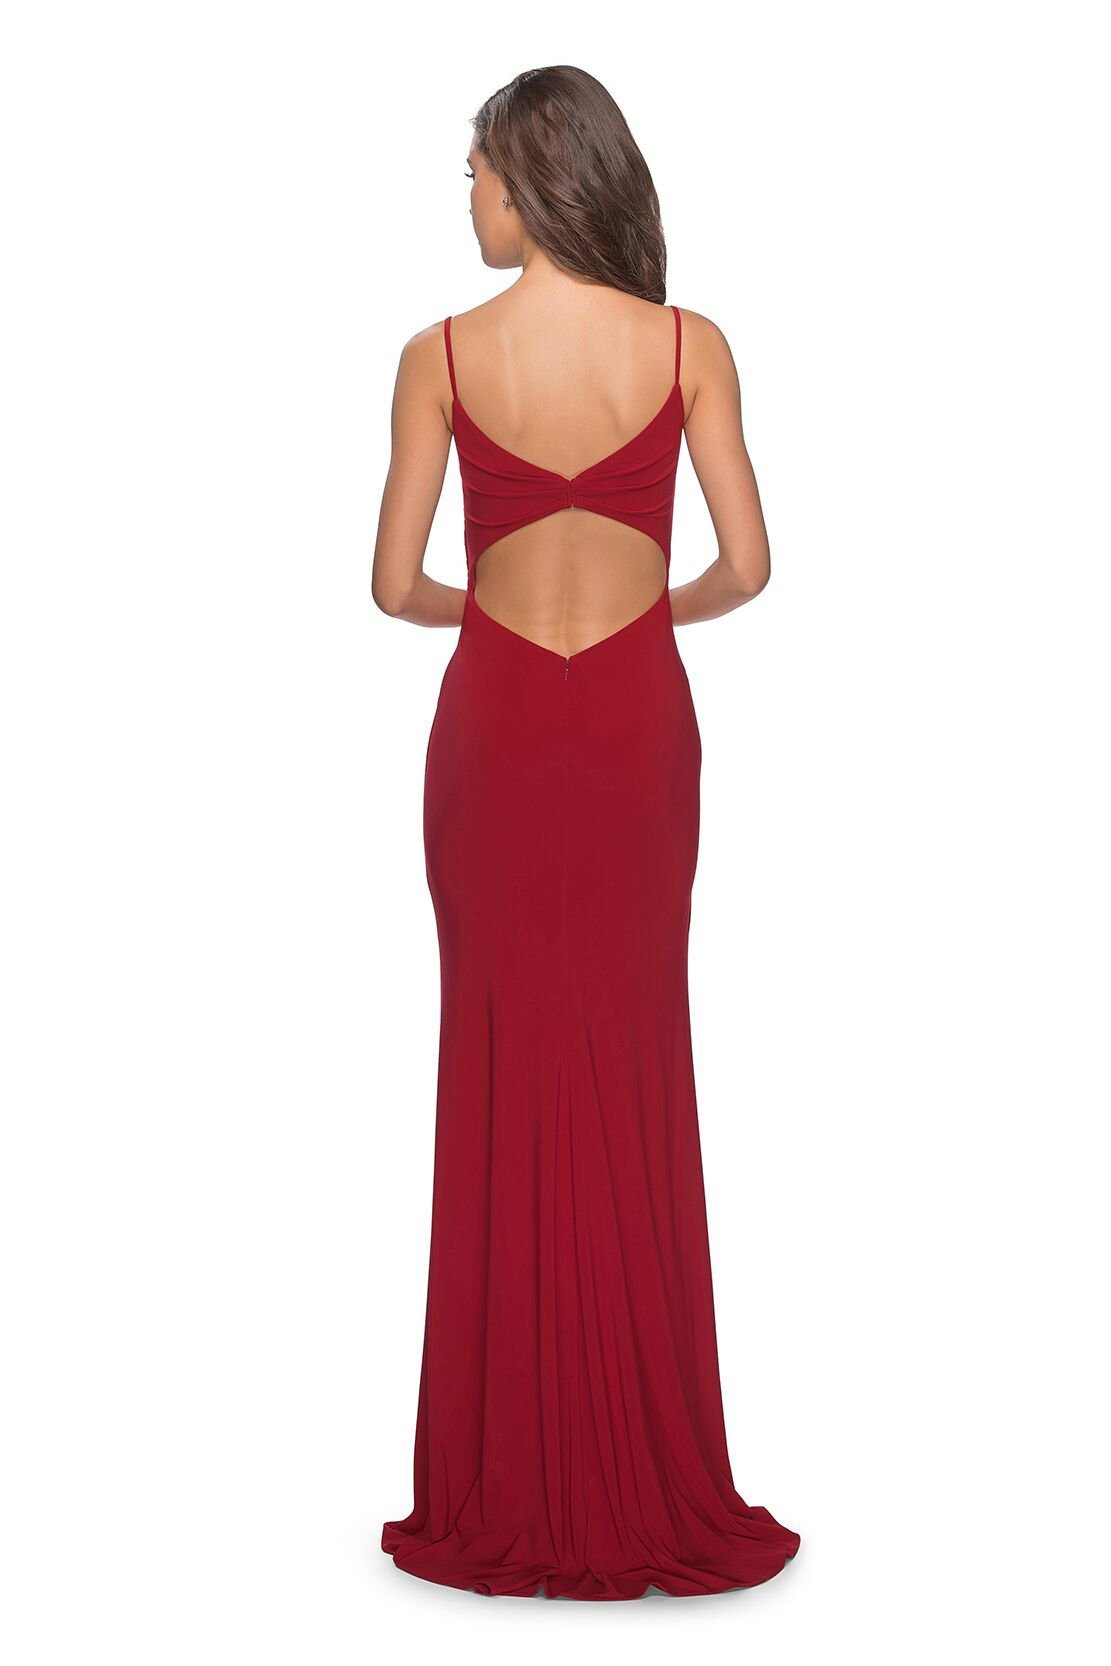 La Femme - V-Neck Surplice High Slit Jersey Evening Dress 28079SC In Red